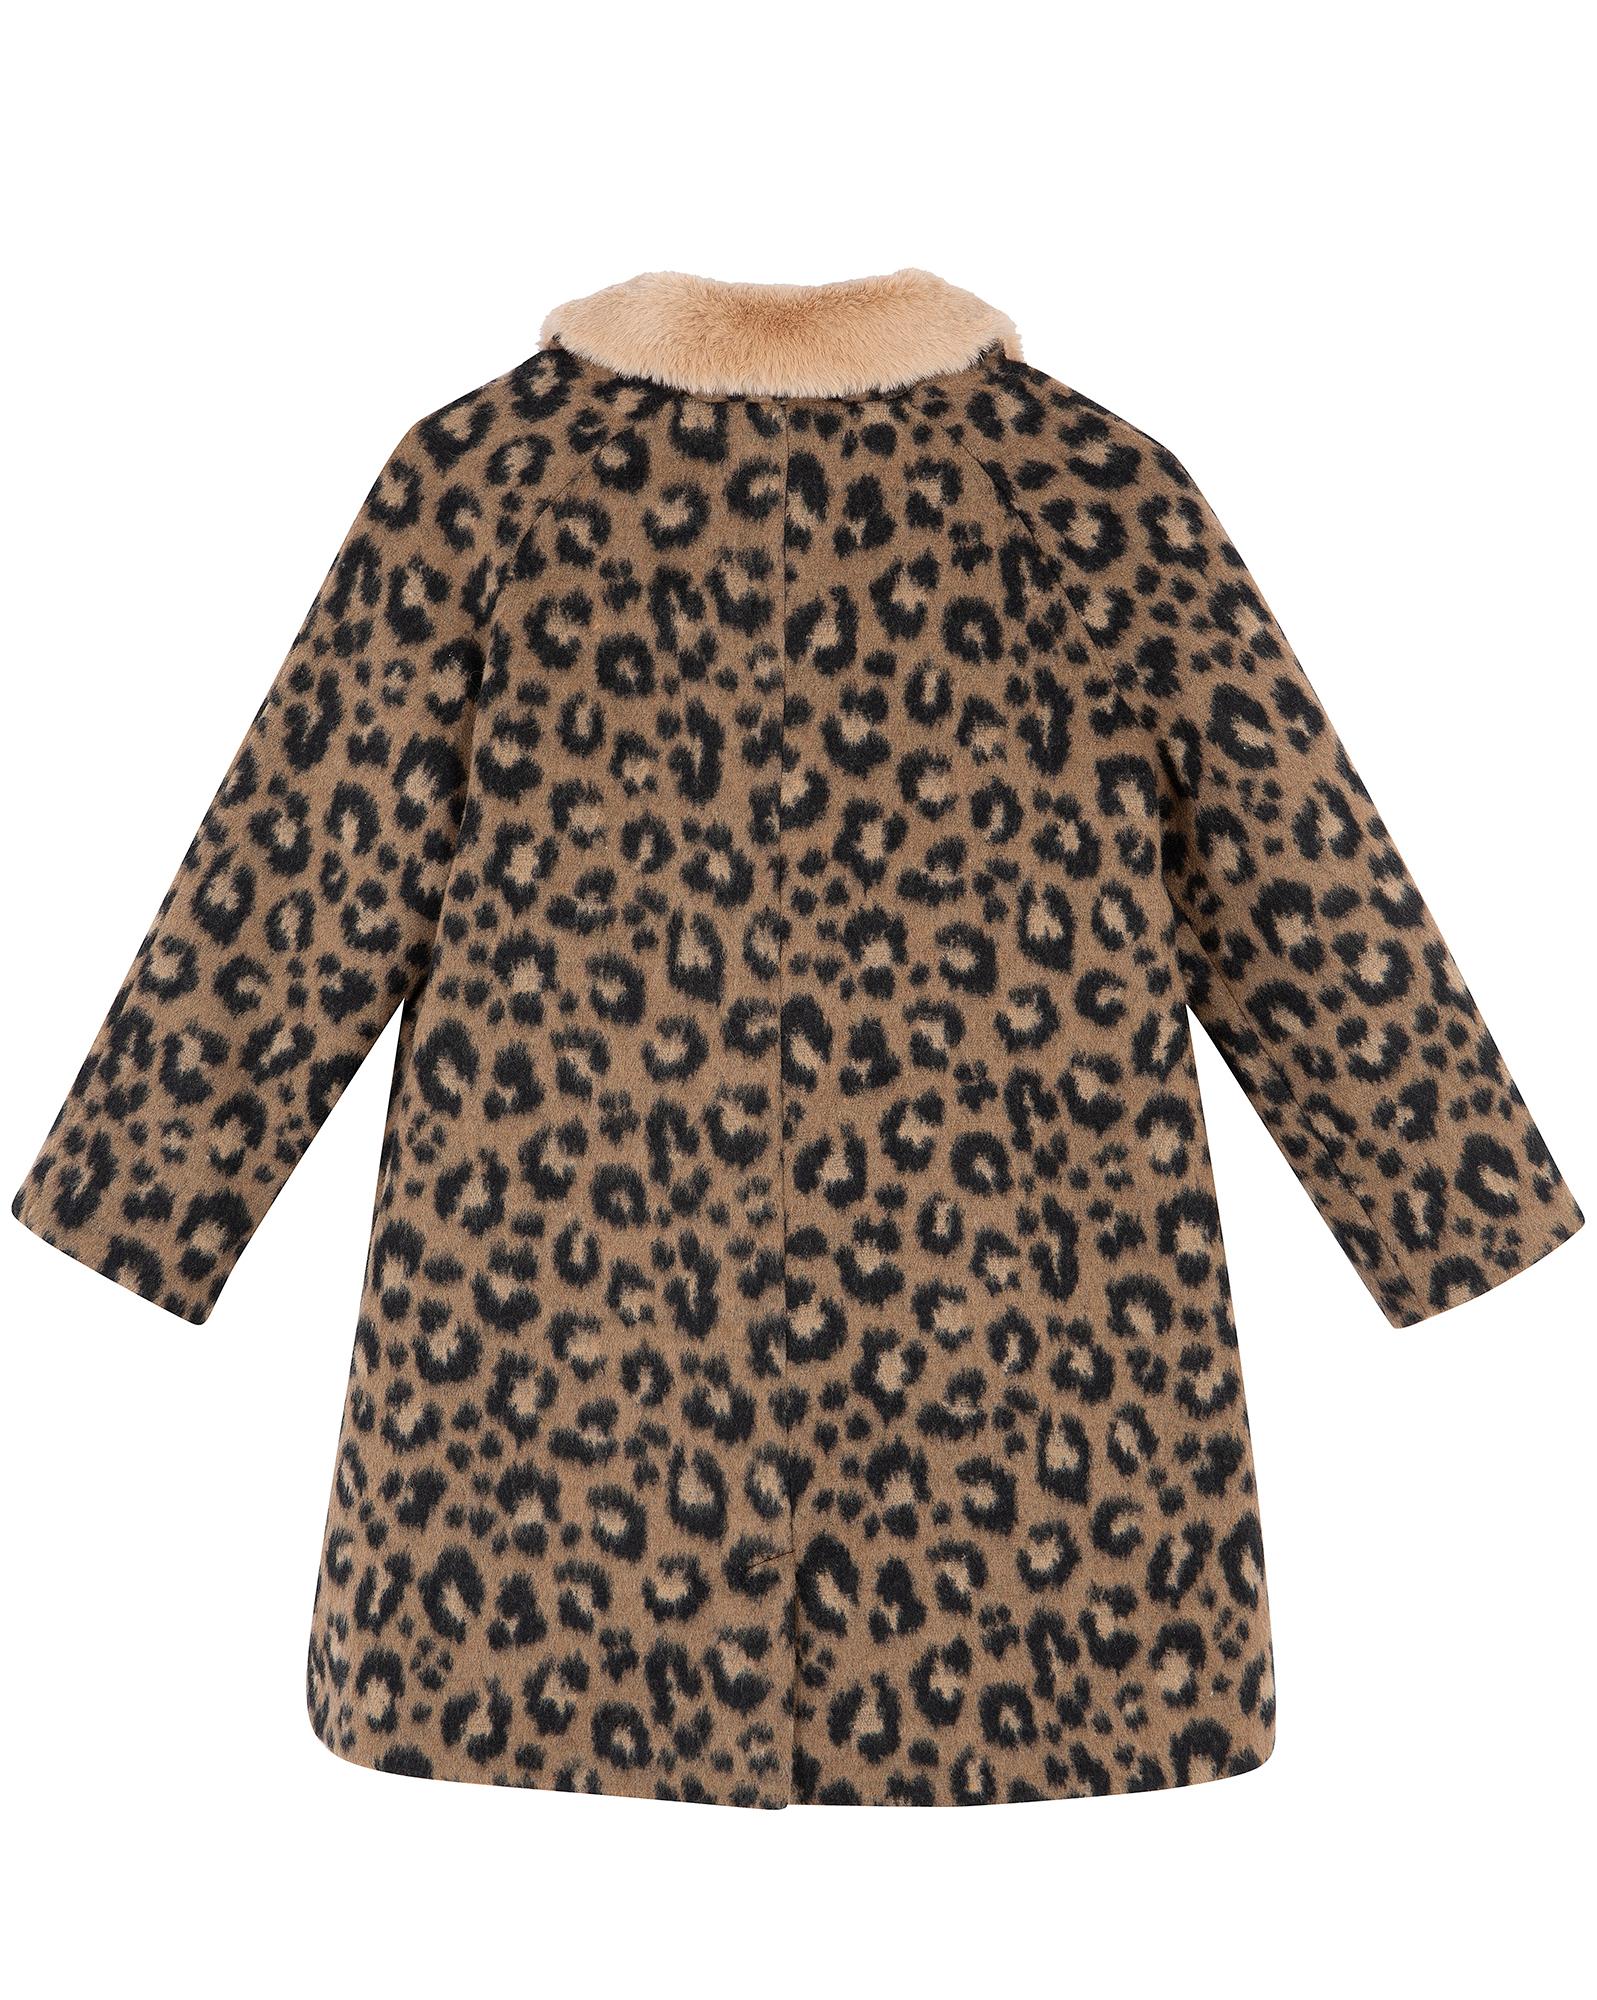 Manteau Hilda marron en lainage imprimé léopard